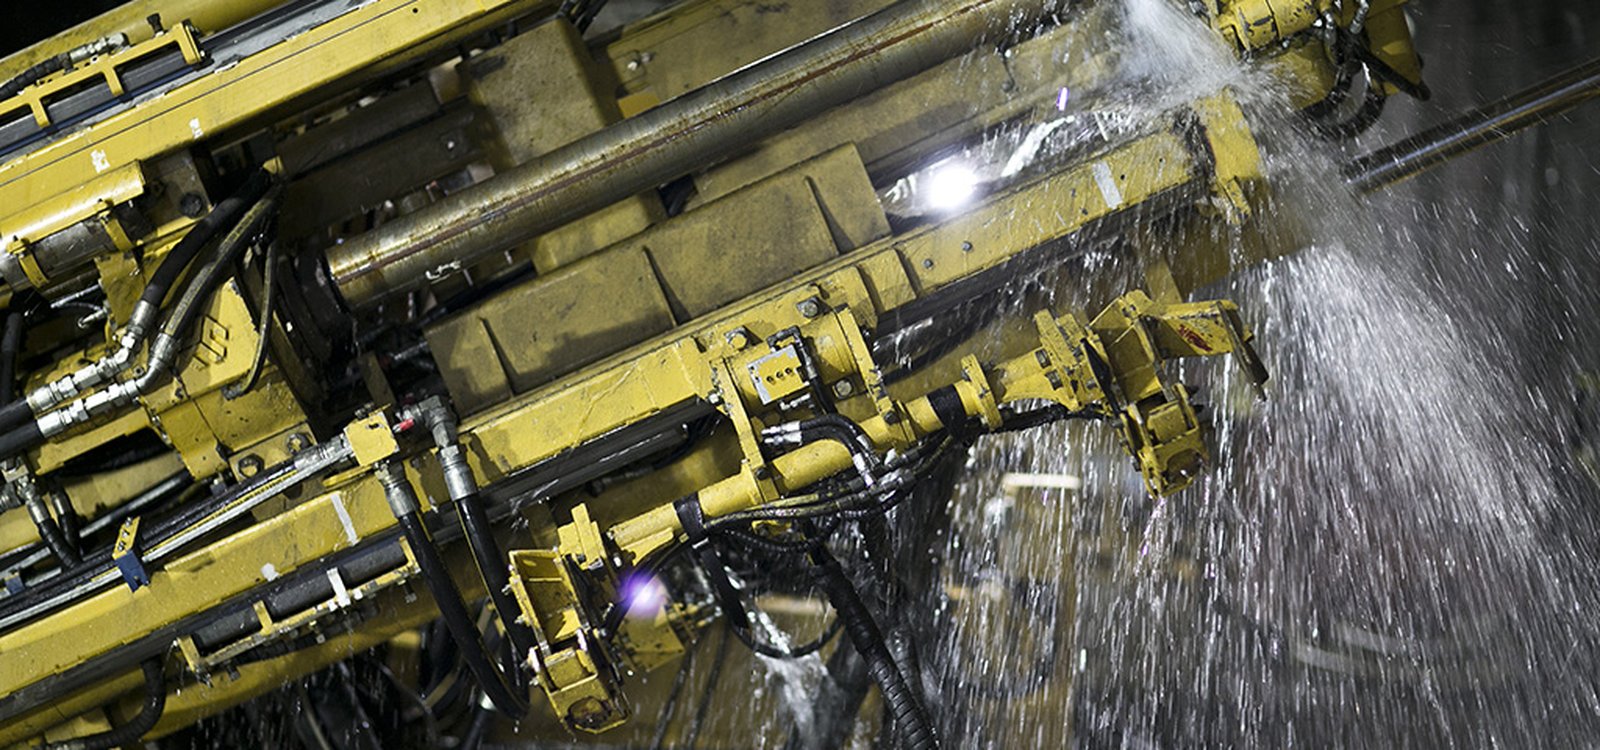 Sandvik DU331-TW в действии на руднике Макaртур-Ривер. Кроме того, компания Sandvik поставила оборудование на рудник Рэббит-Лейк и в настоящее время занимается внедрением системы скважинной гидродобычи на руднике Сигар-Лейк. Эти рудники также принадлежат Cameco.